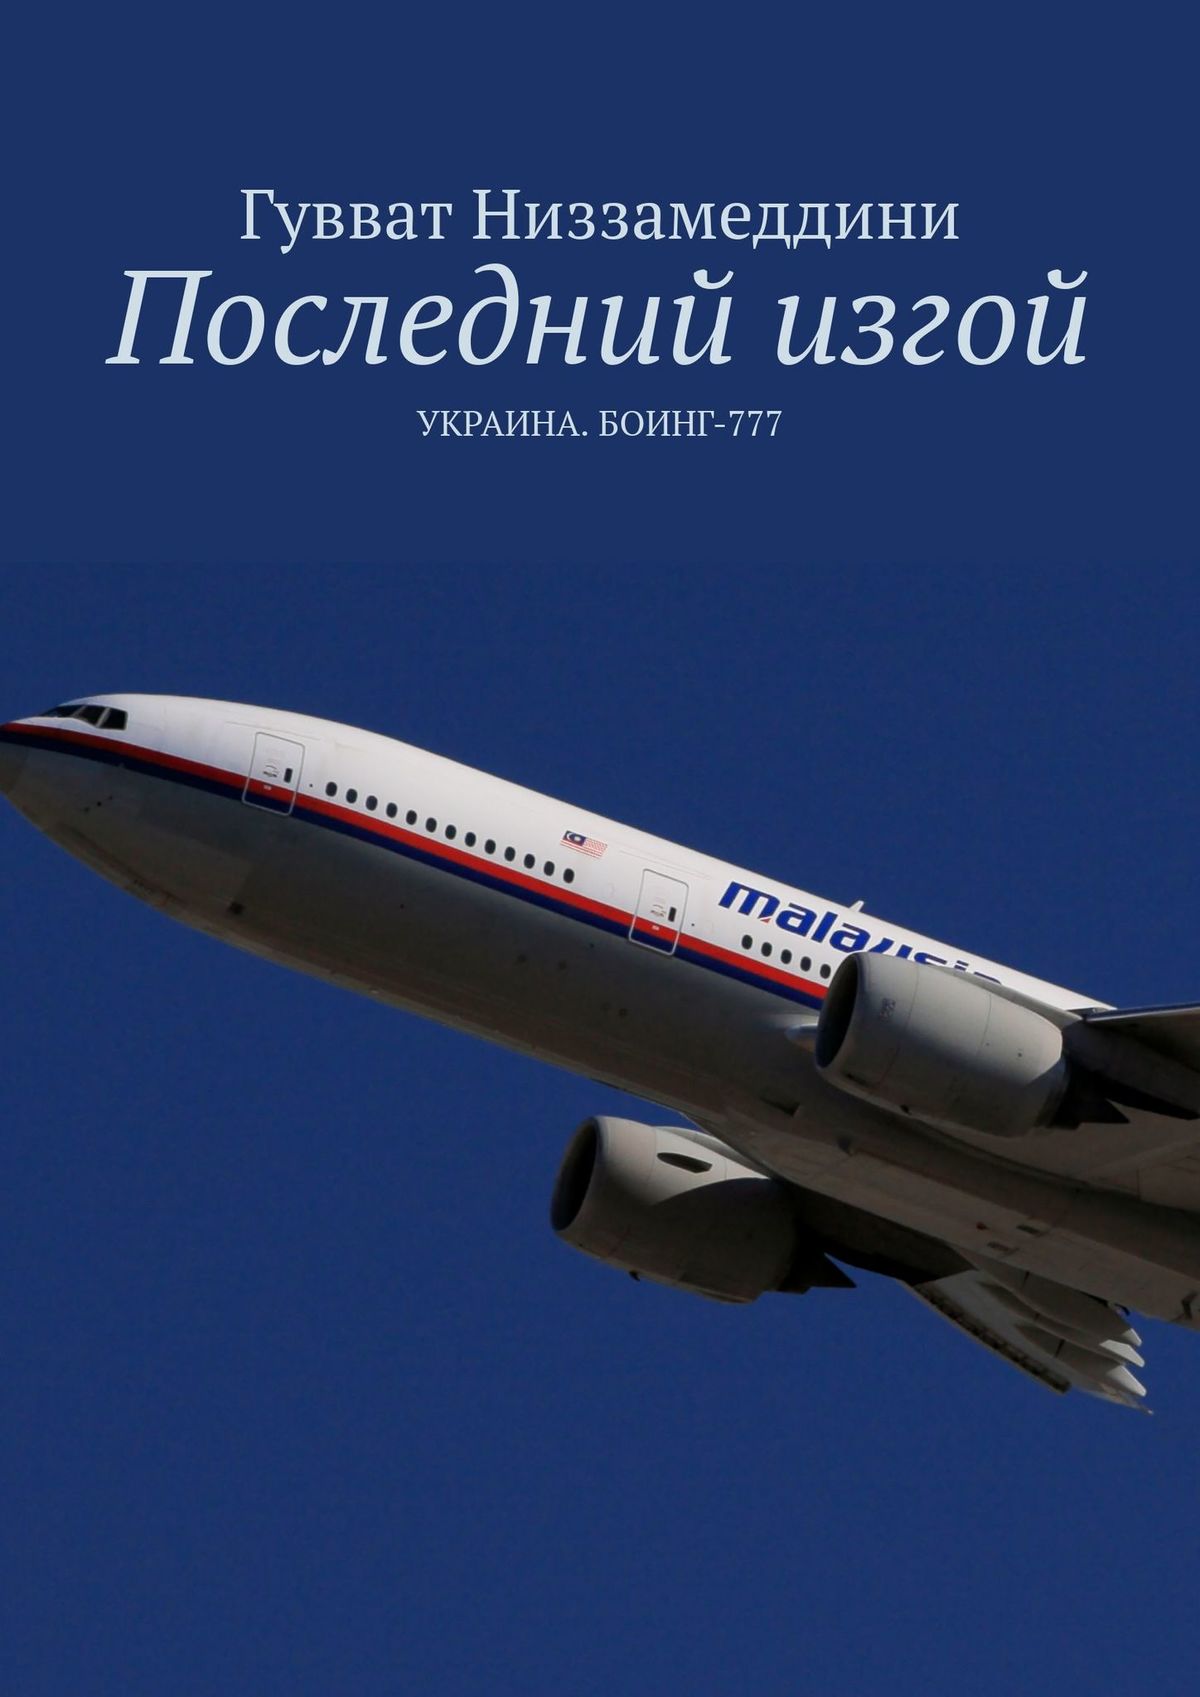 Последний изгой. Украина: Боинг-777